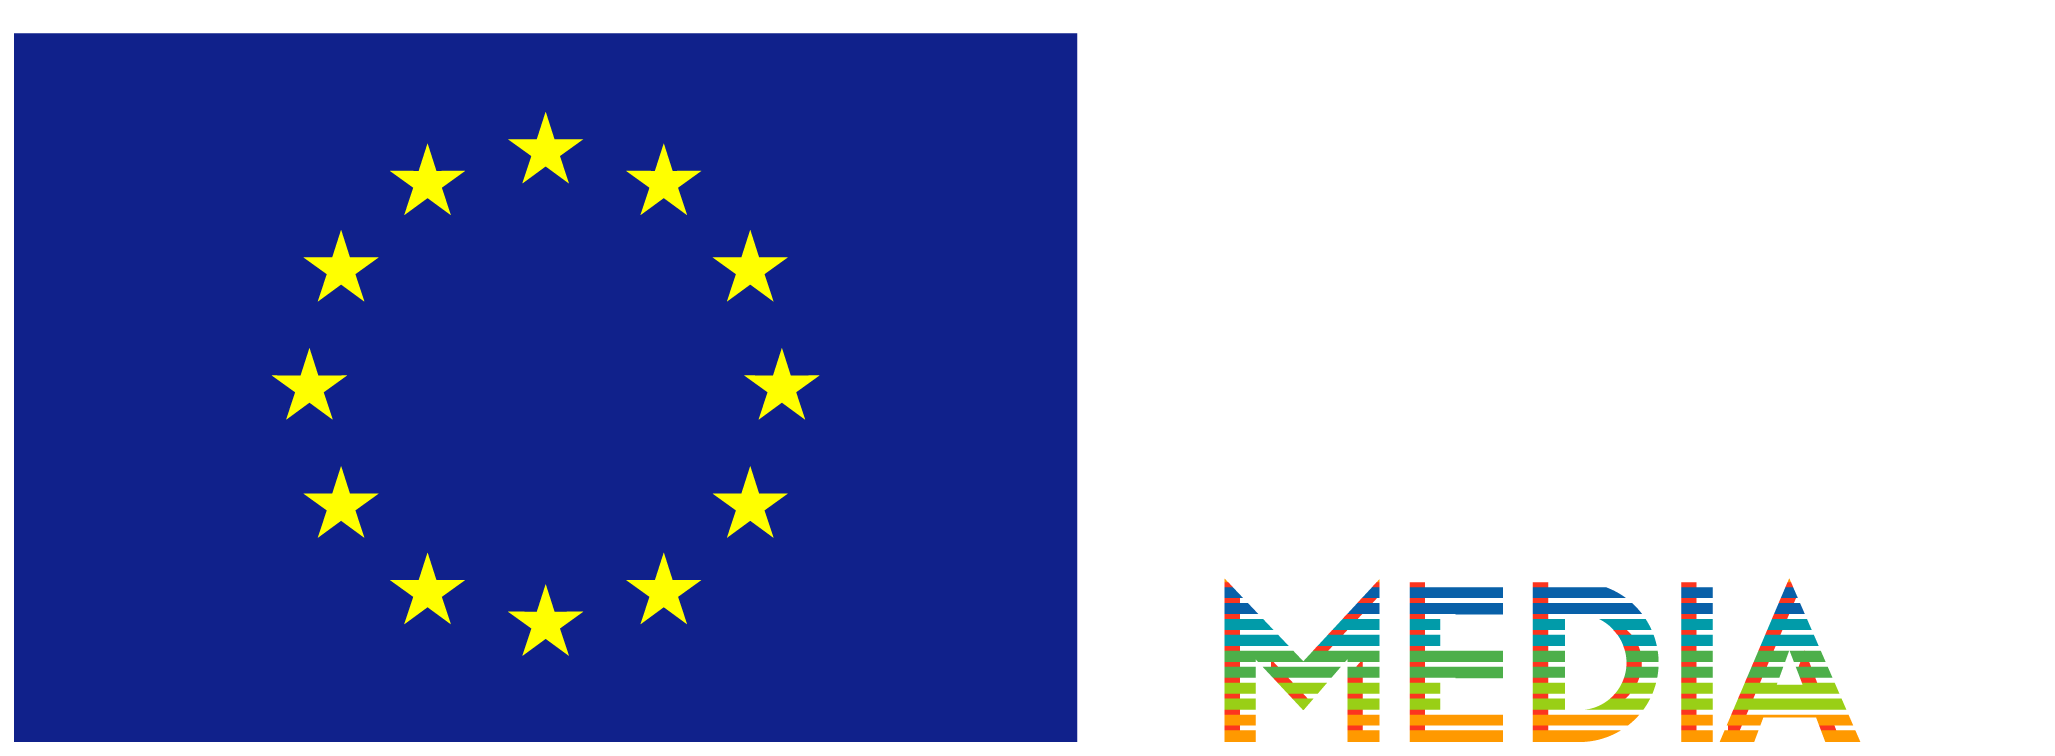 RadosaEiropa Media